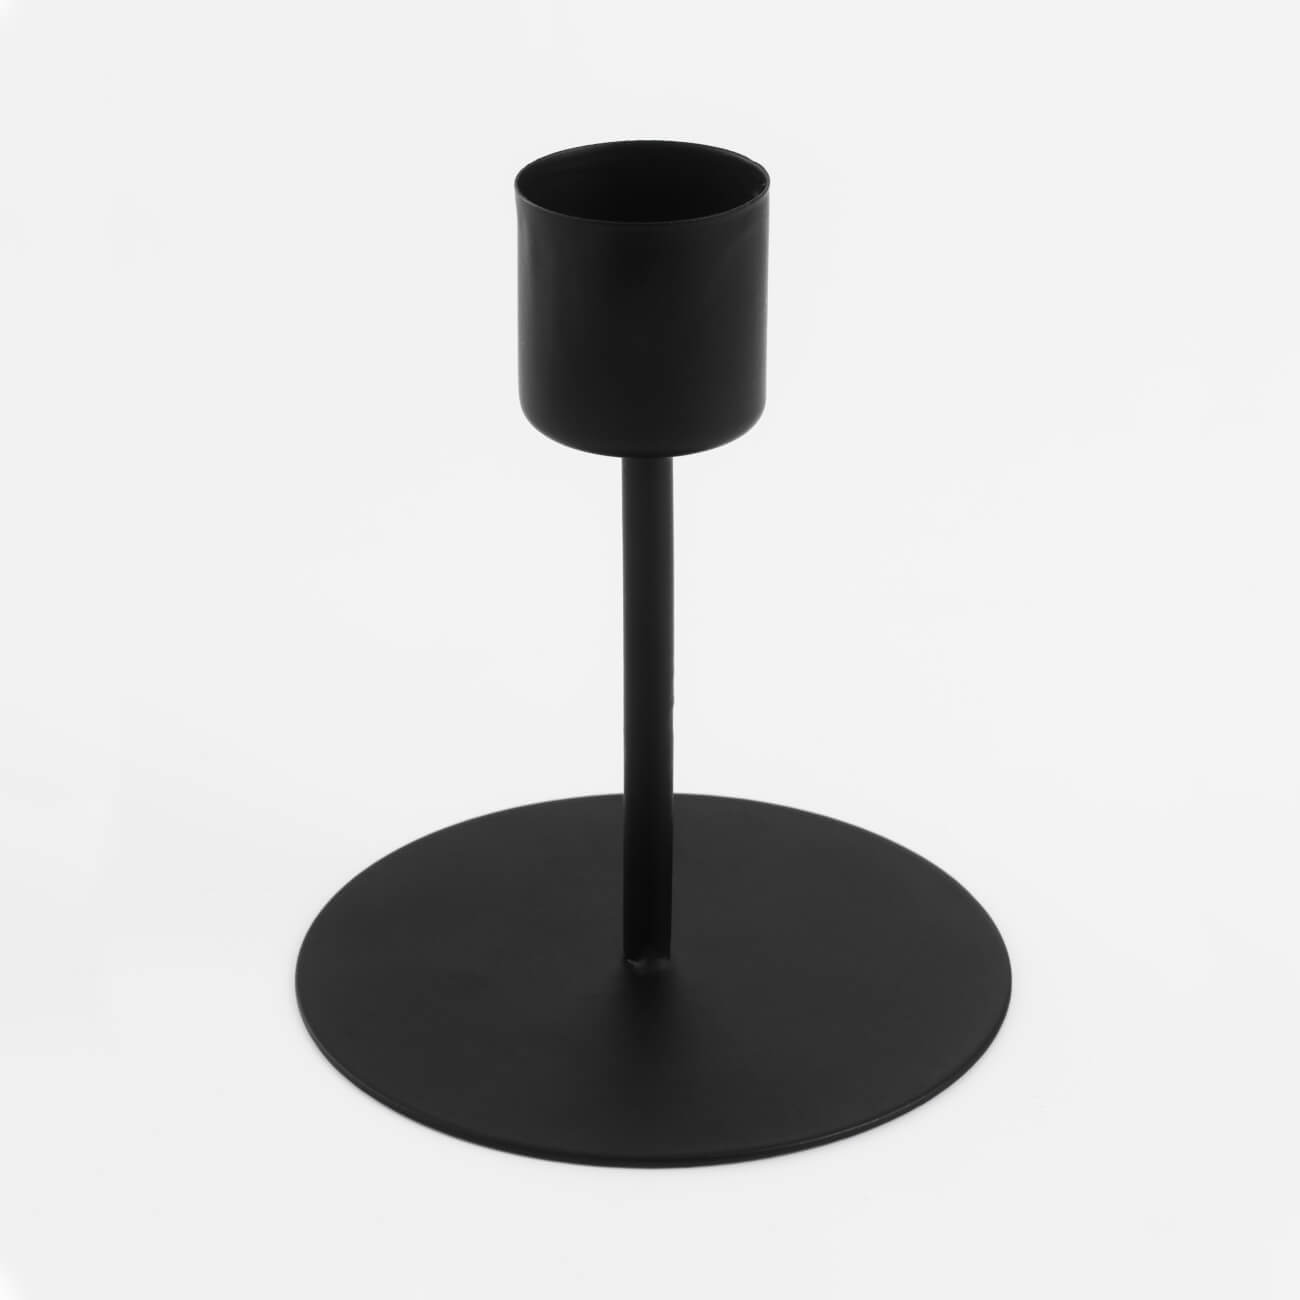 Подсвечник, 10 см, для тонкой свечи, на ножке, металл, черный, Black style подставка для телефона с регулируемым углом наклона металл